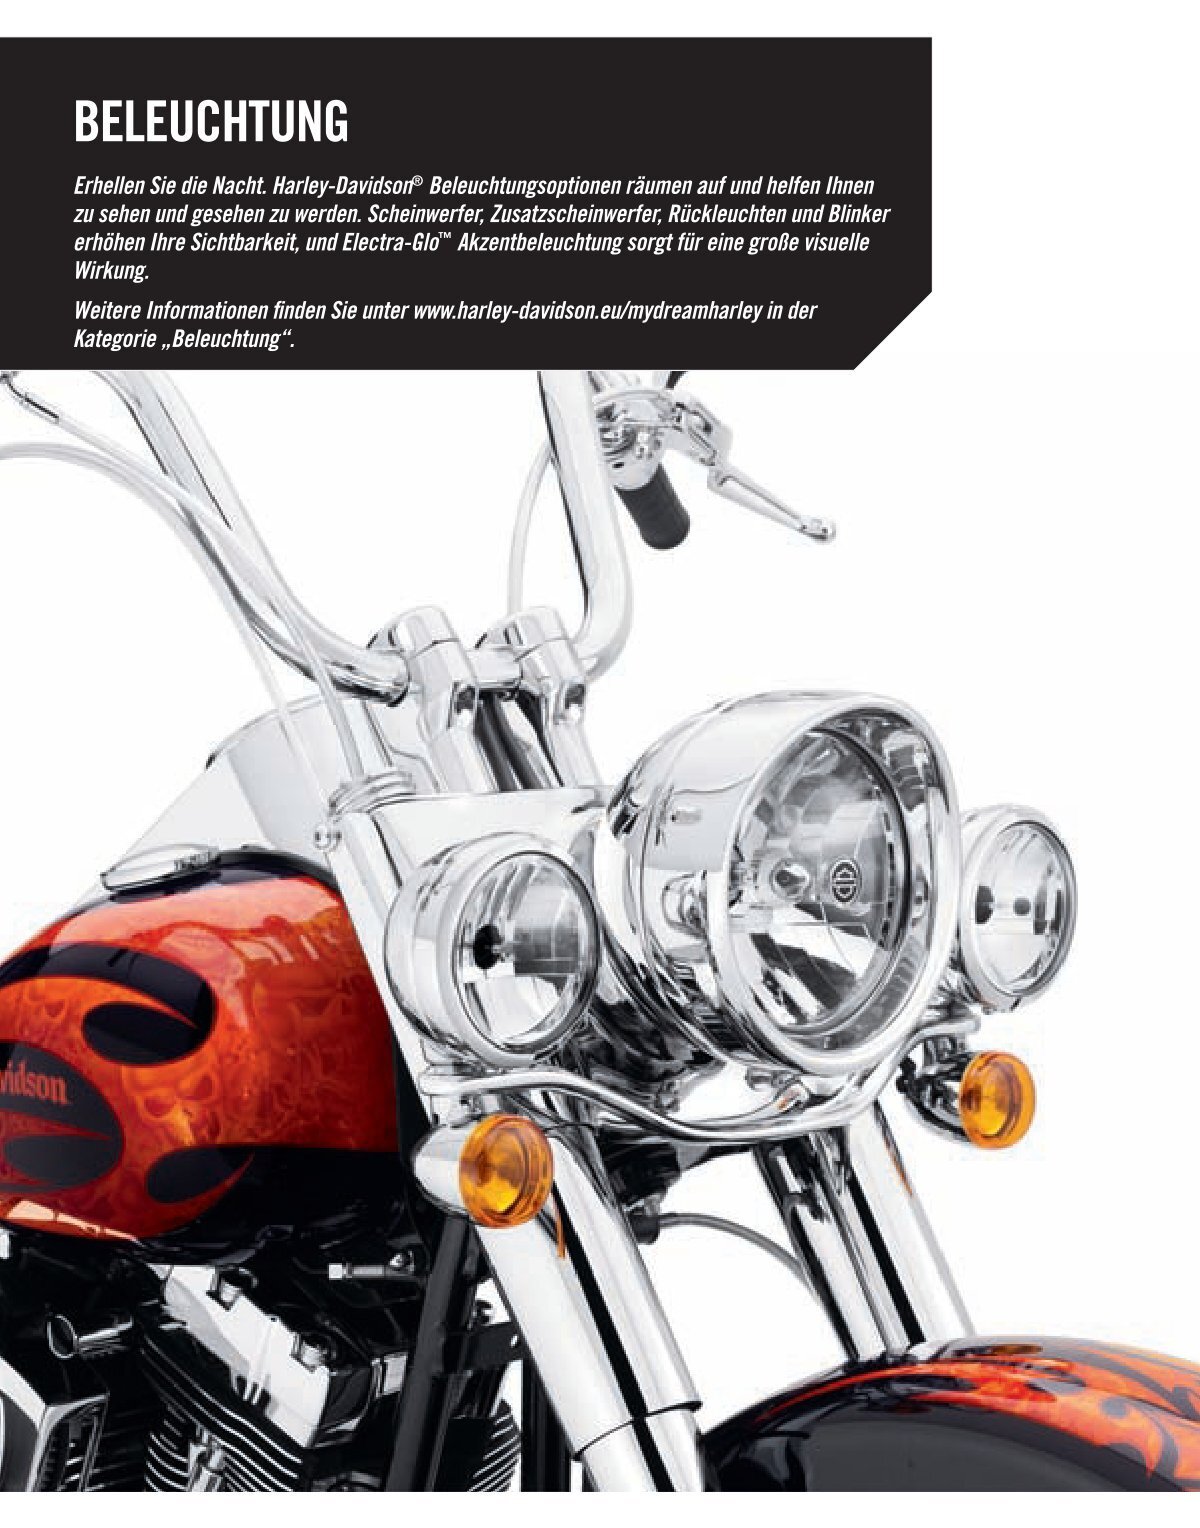 Blinkrelais 12 Volt für Harley-Davidson Motorräder wie Evo